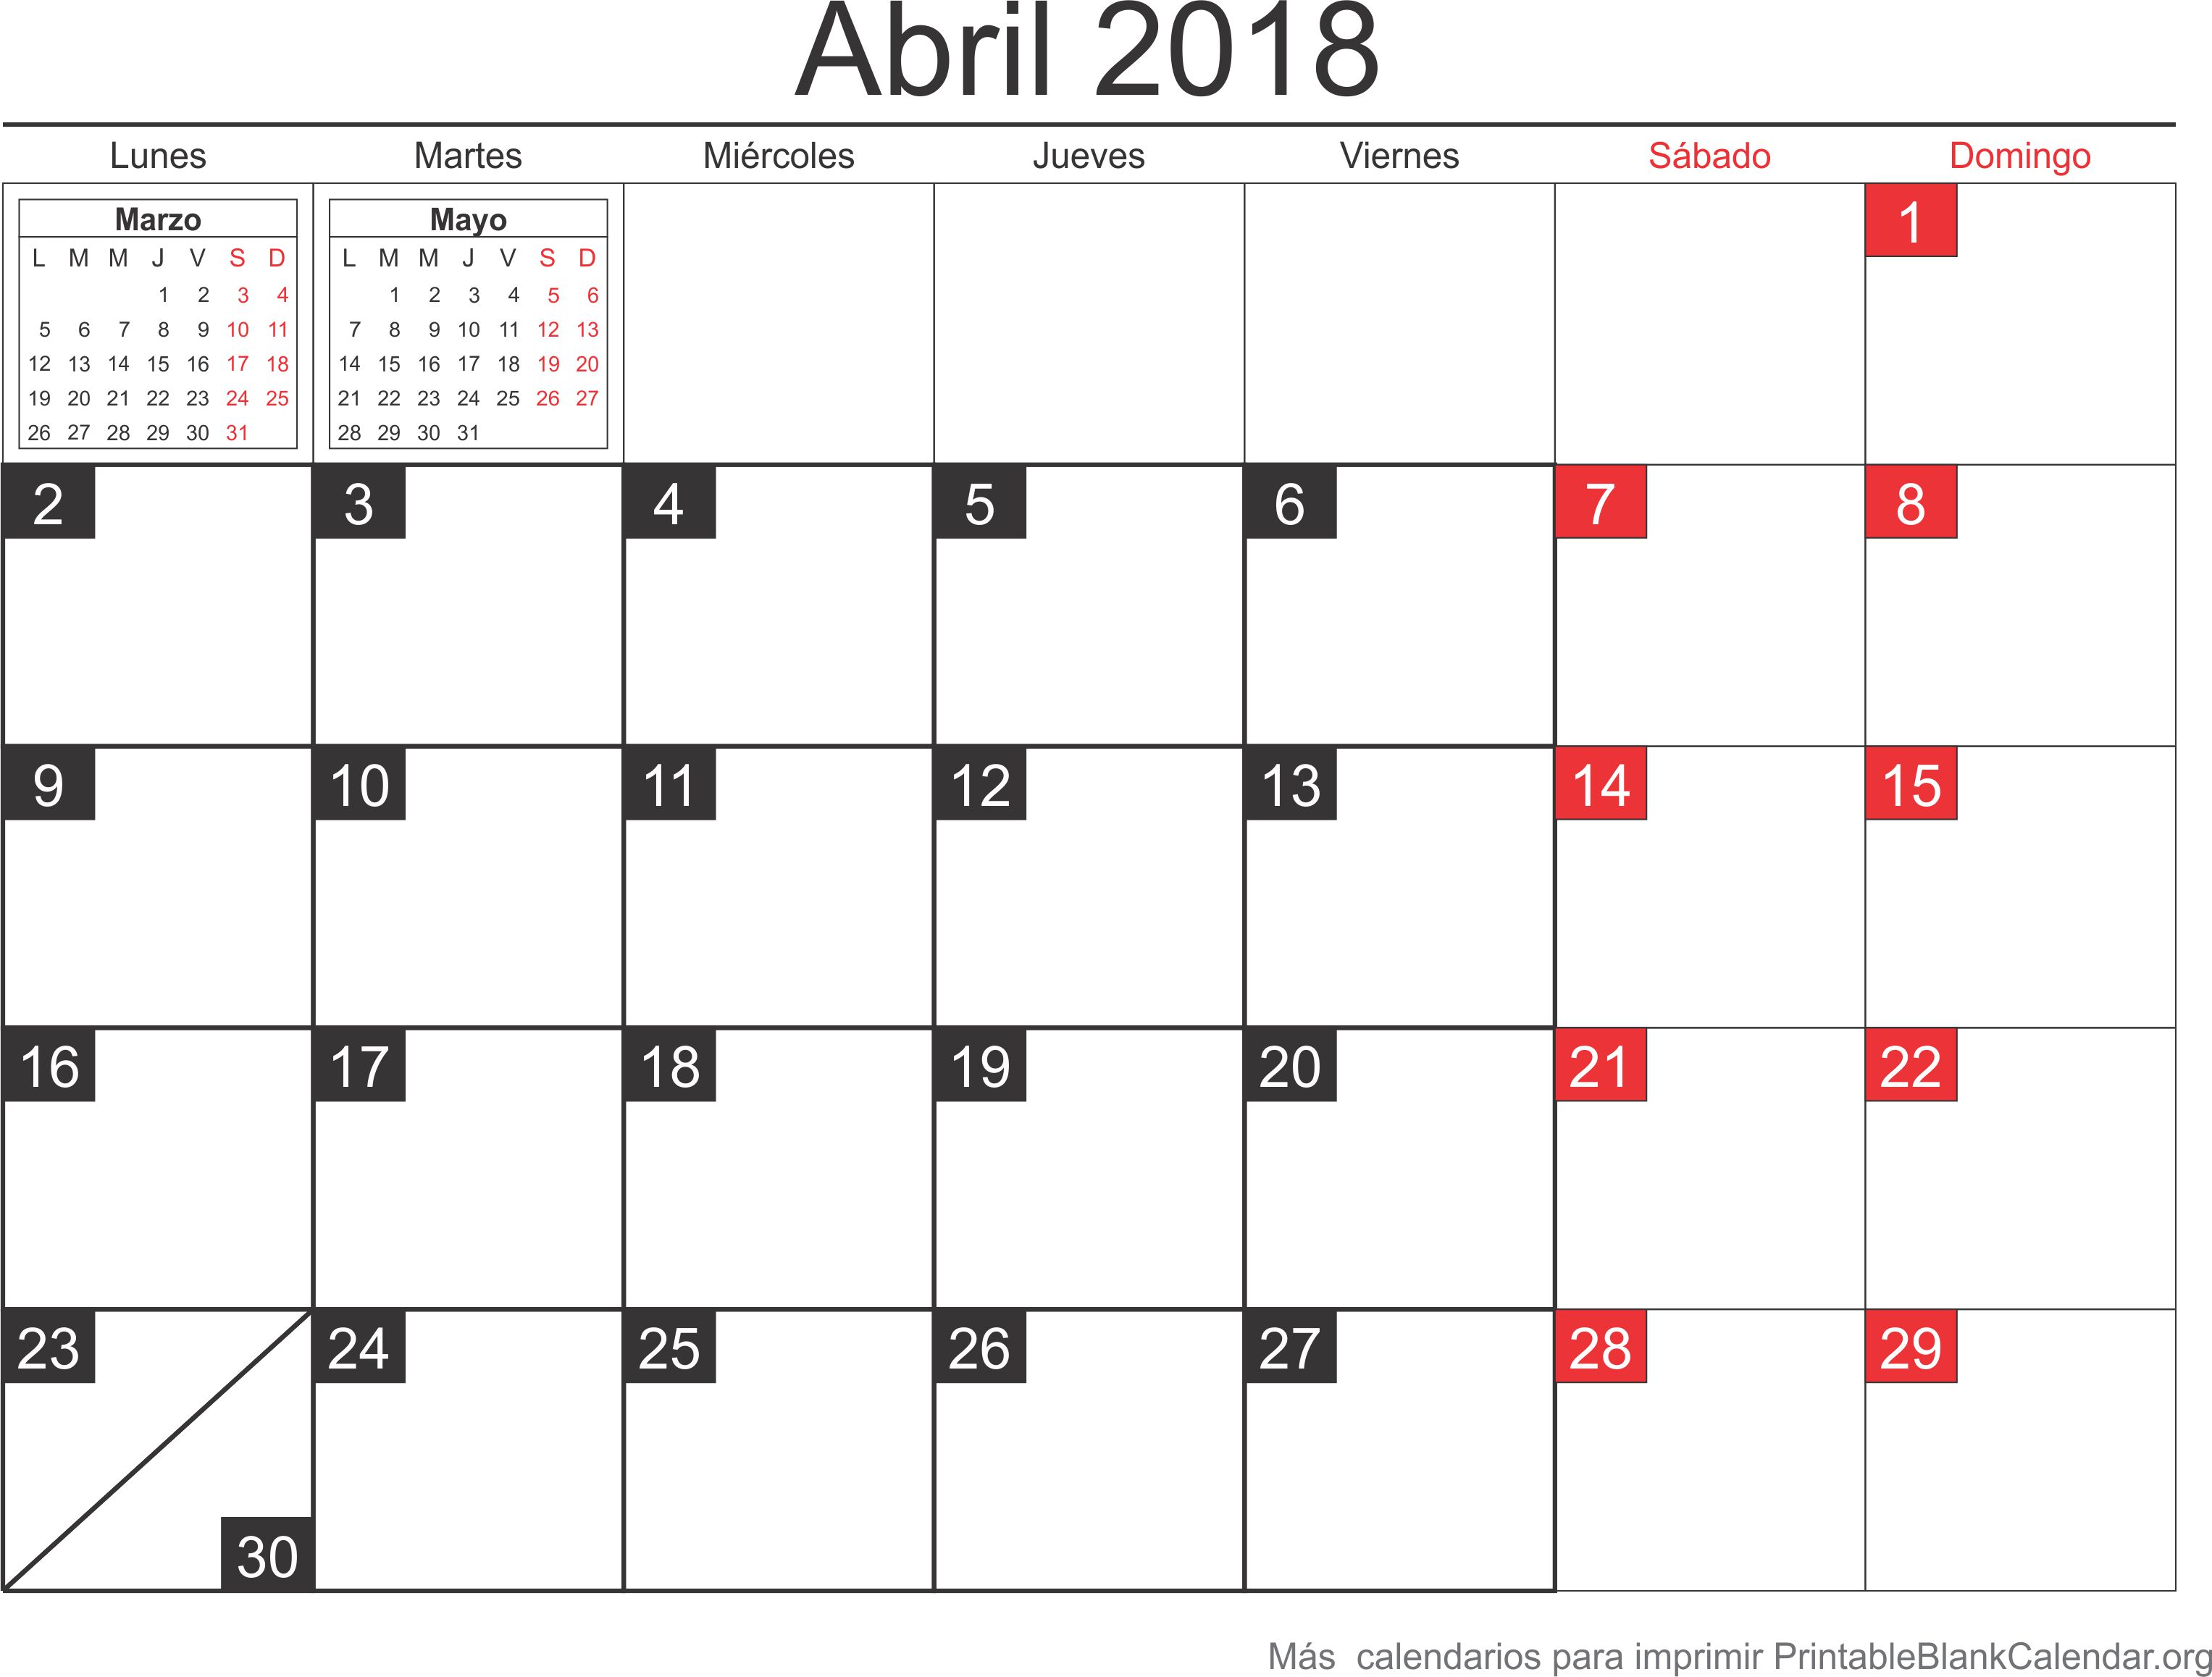 abril 2018 calendario